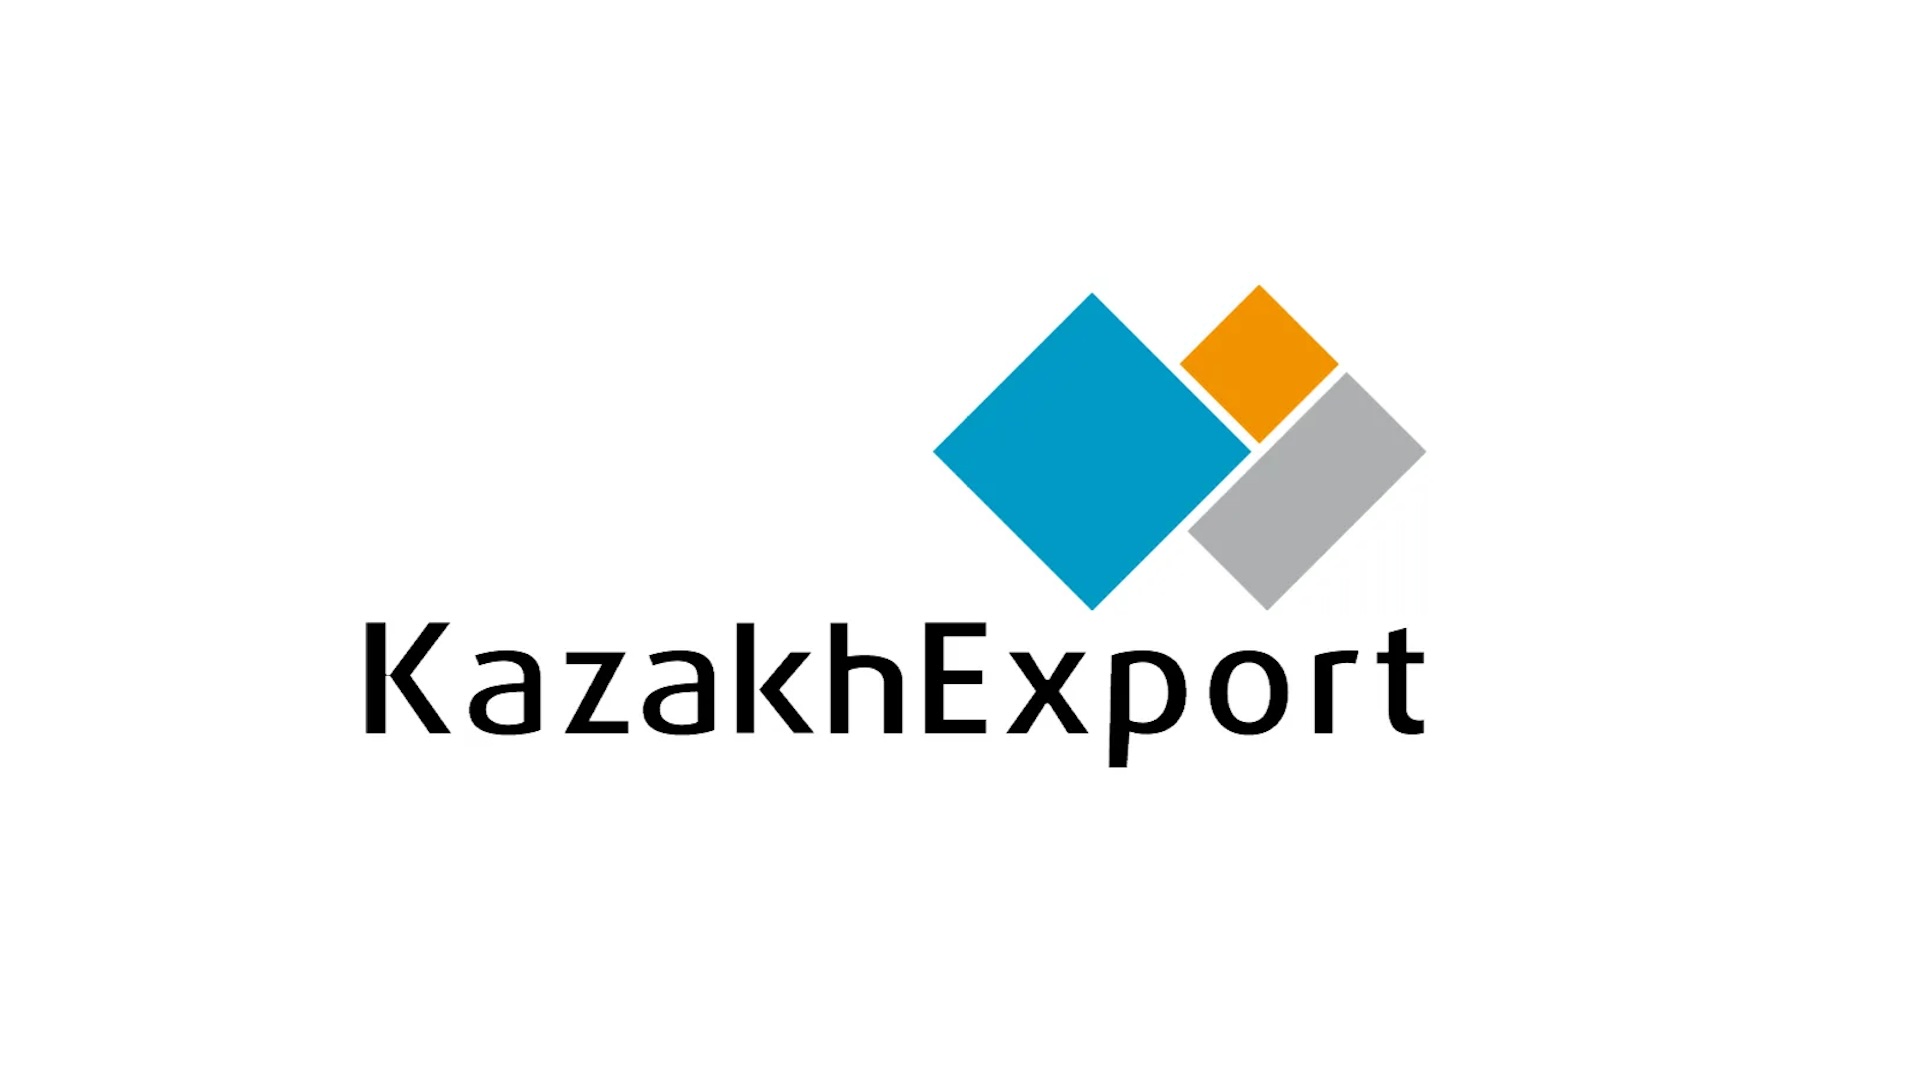 KazakhExport: переформатирование в институт развития экспорта и новые меры поддержки экспортеров